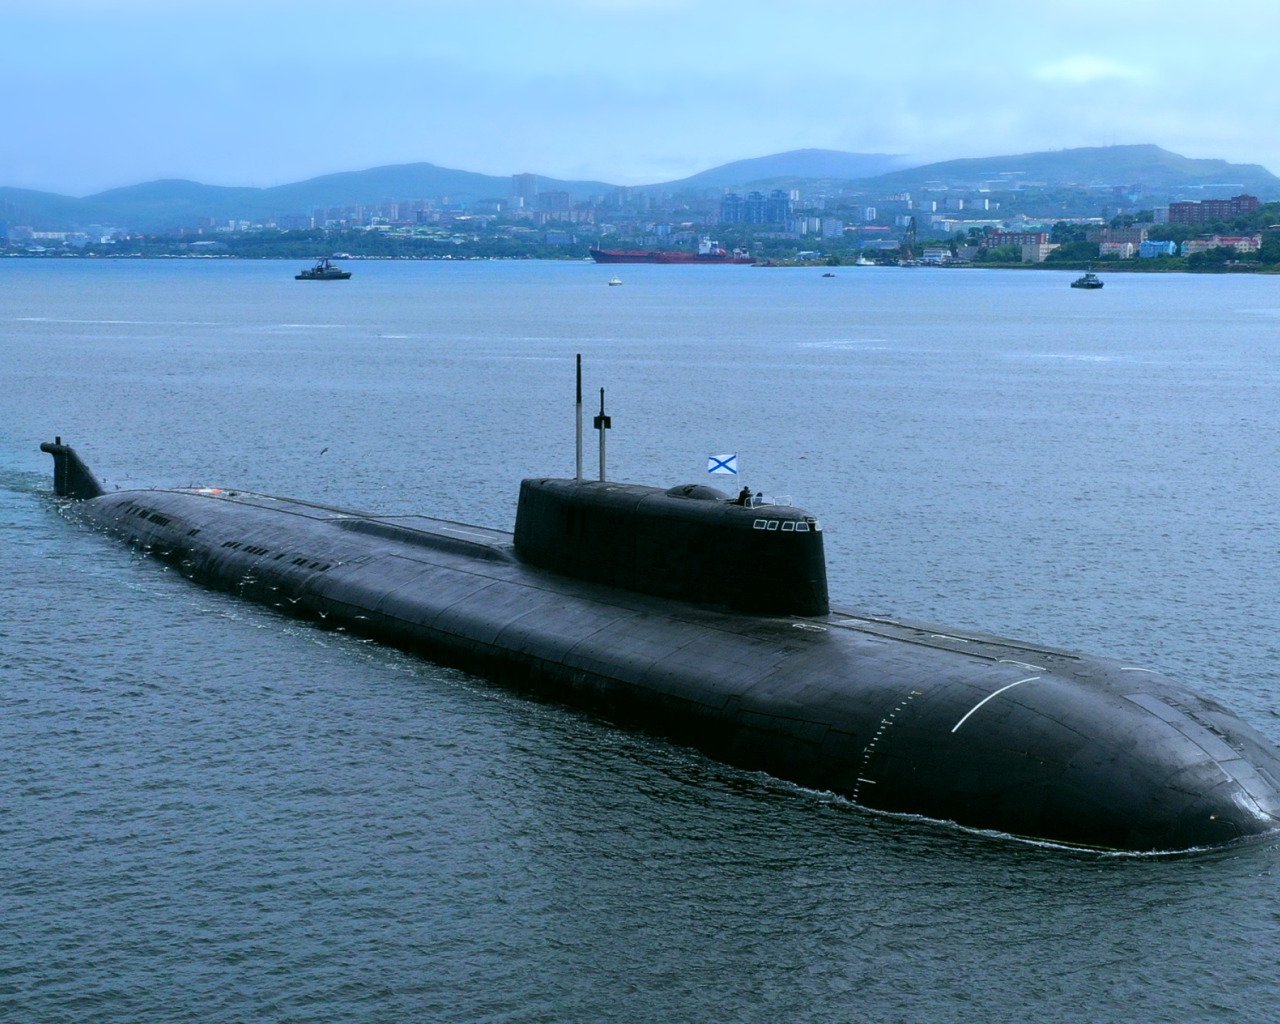 Подводный флот тихоокеанского флота. Подводные лодки проекта 945а «Кондор». Подводные лодки проекта 949а «Антей». АПЛ проекта 949а («Антей») «Иркутск». Подводные лодки проекта 955 «Борей».